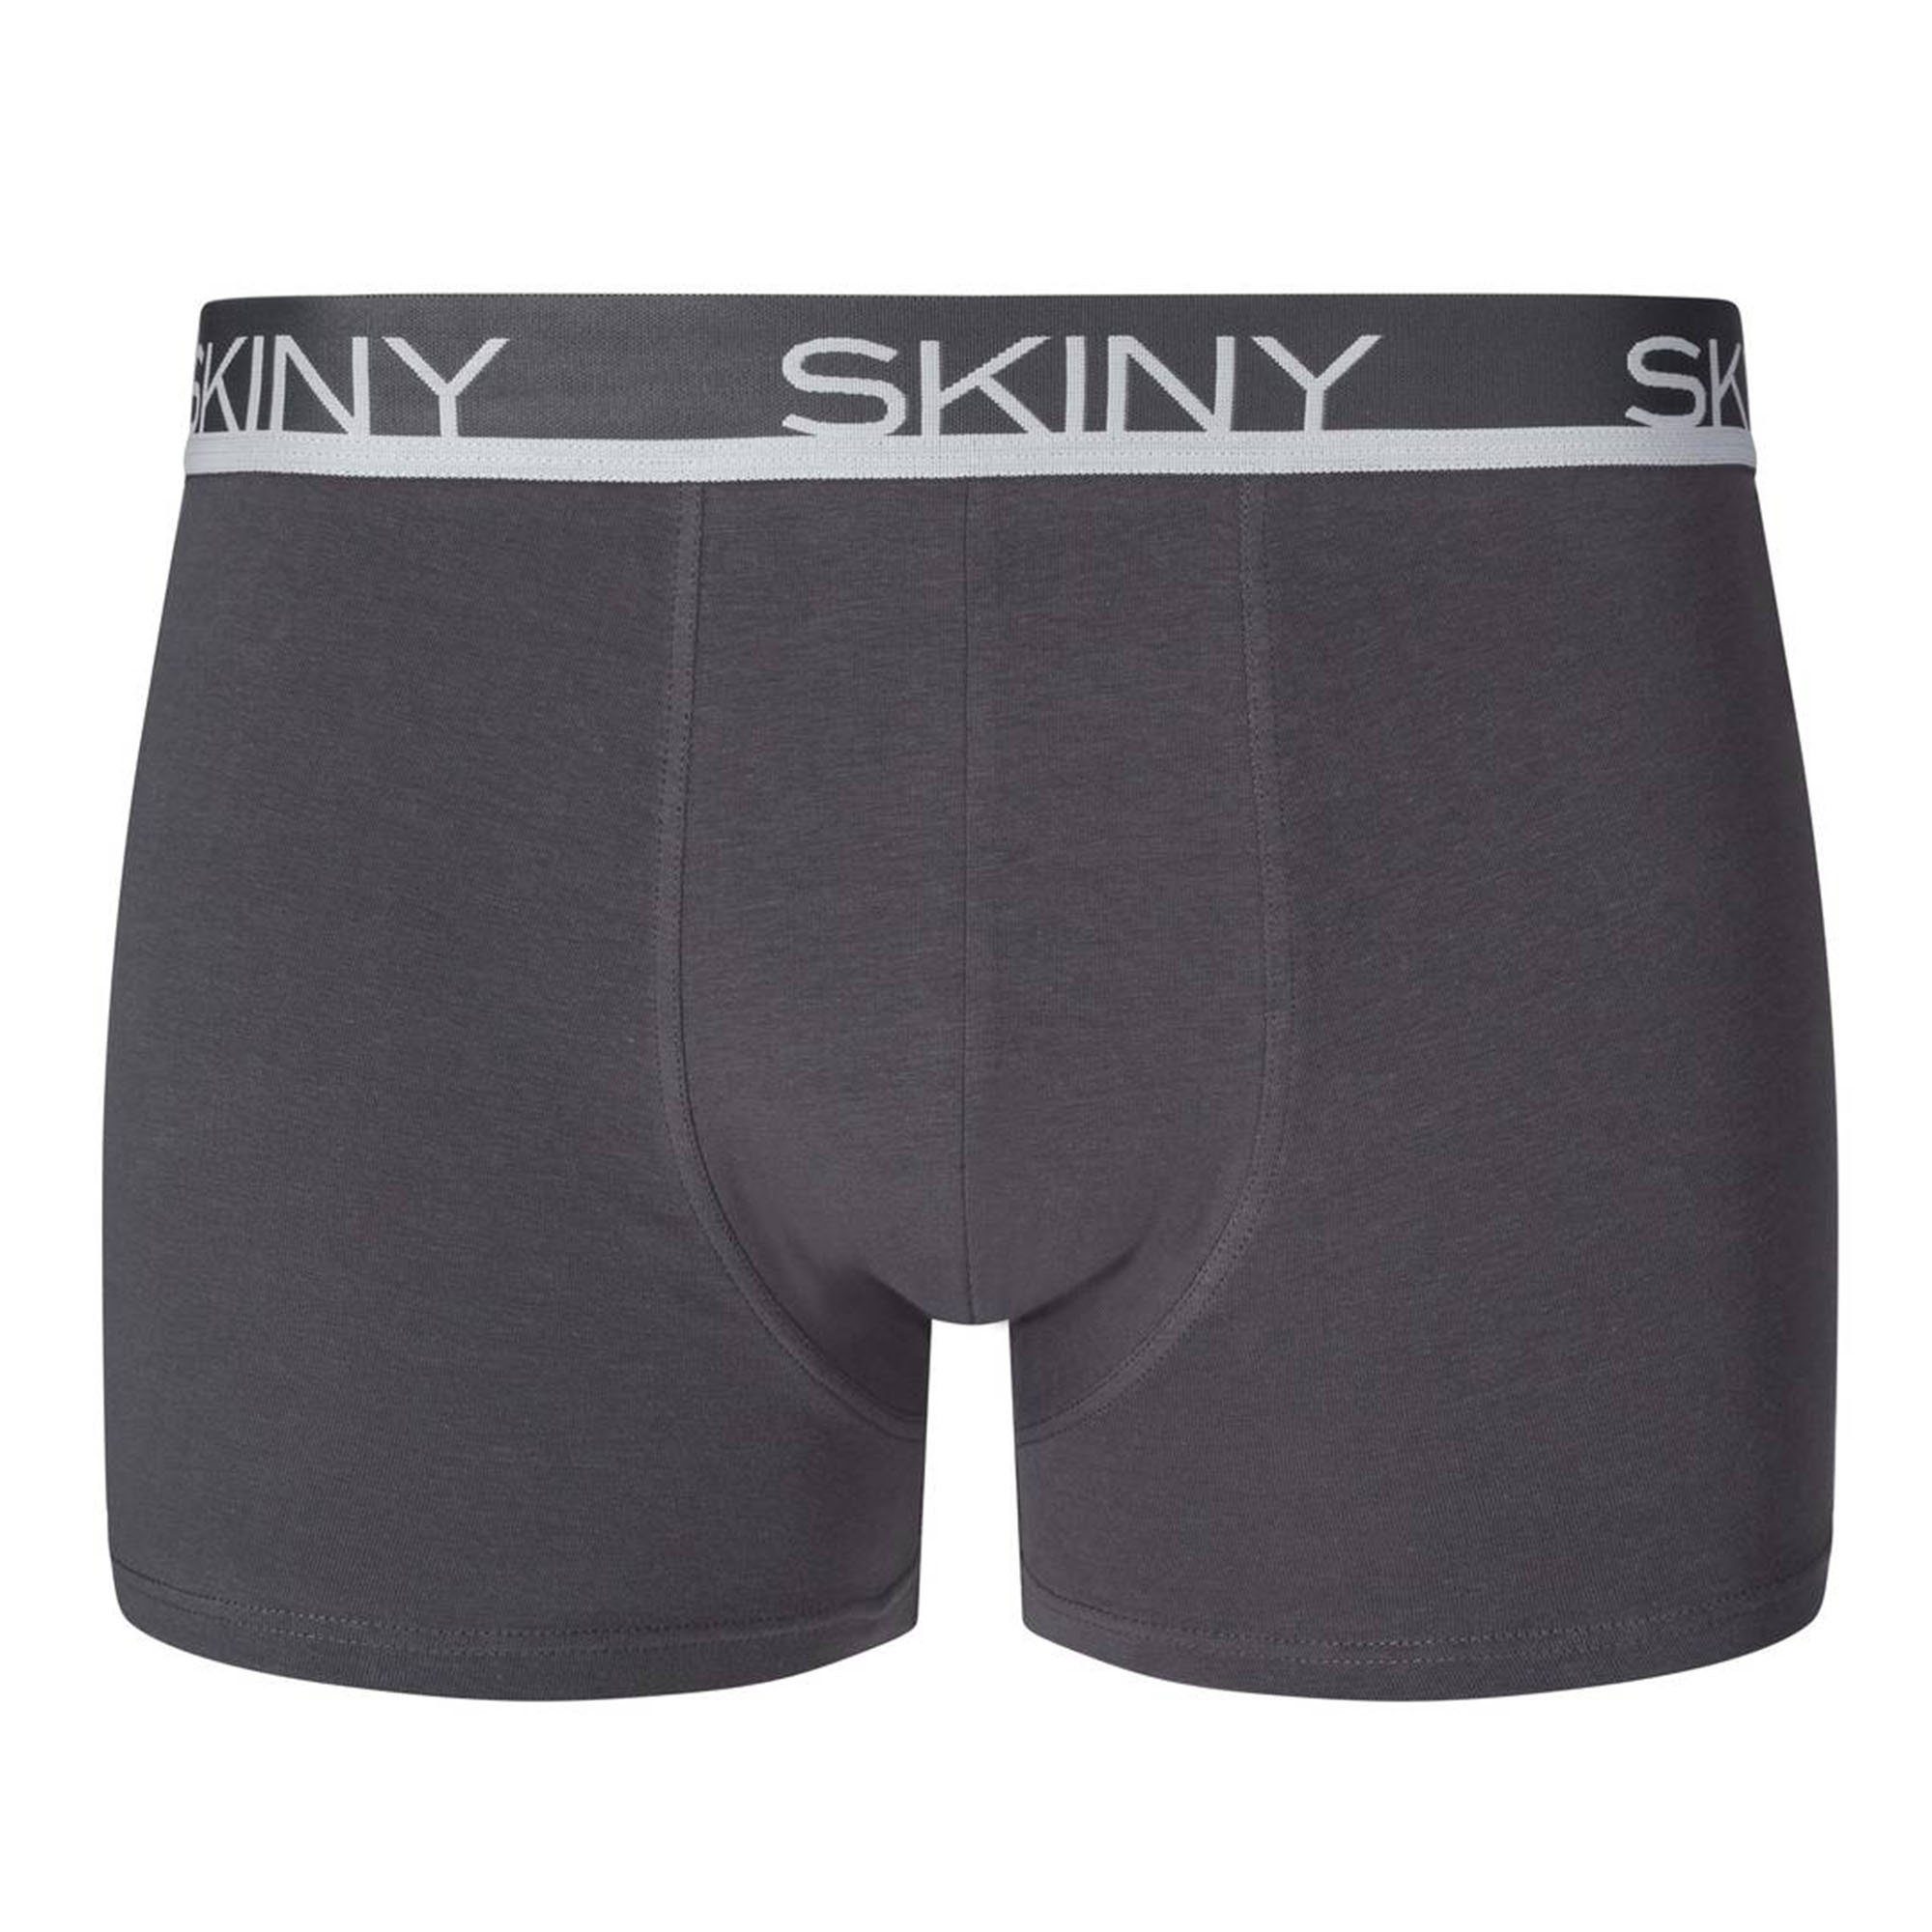 Trunks, Grau/Blau/Schwarz Boxer Pants Skiny - Shorts Boxer Herren 3er Pack